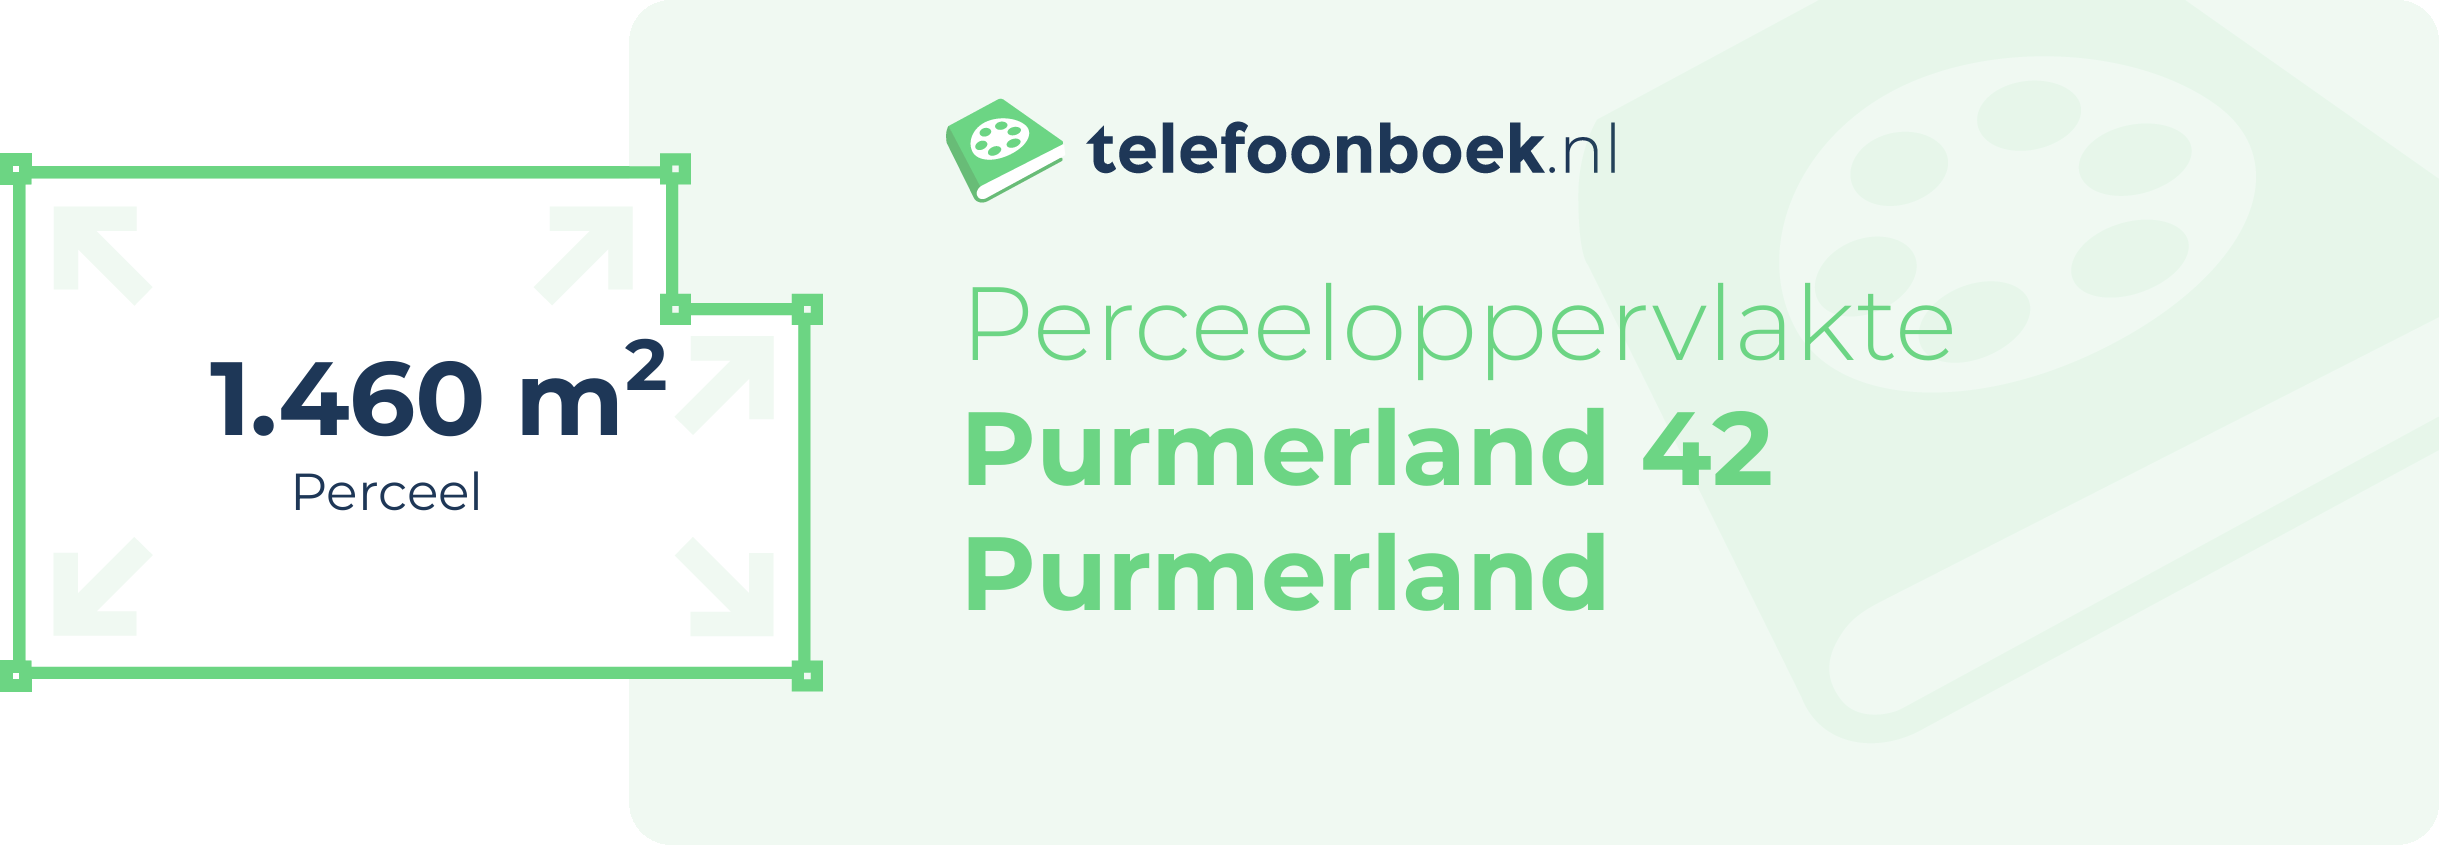 Perceeloppervlakte Purmerland 42 Purmerland